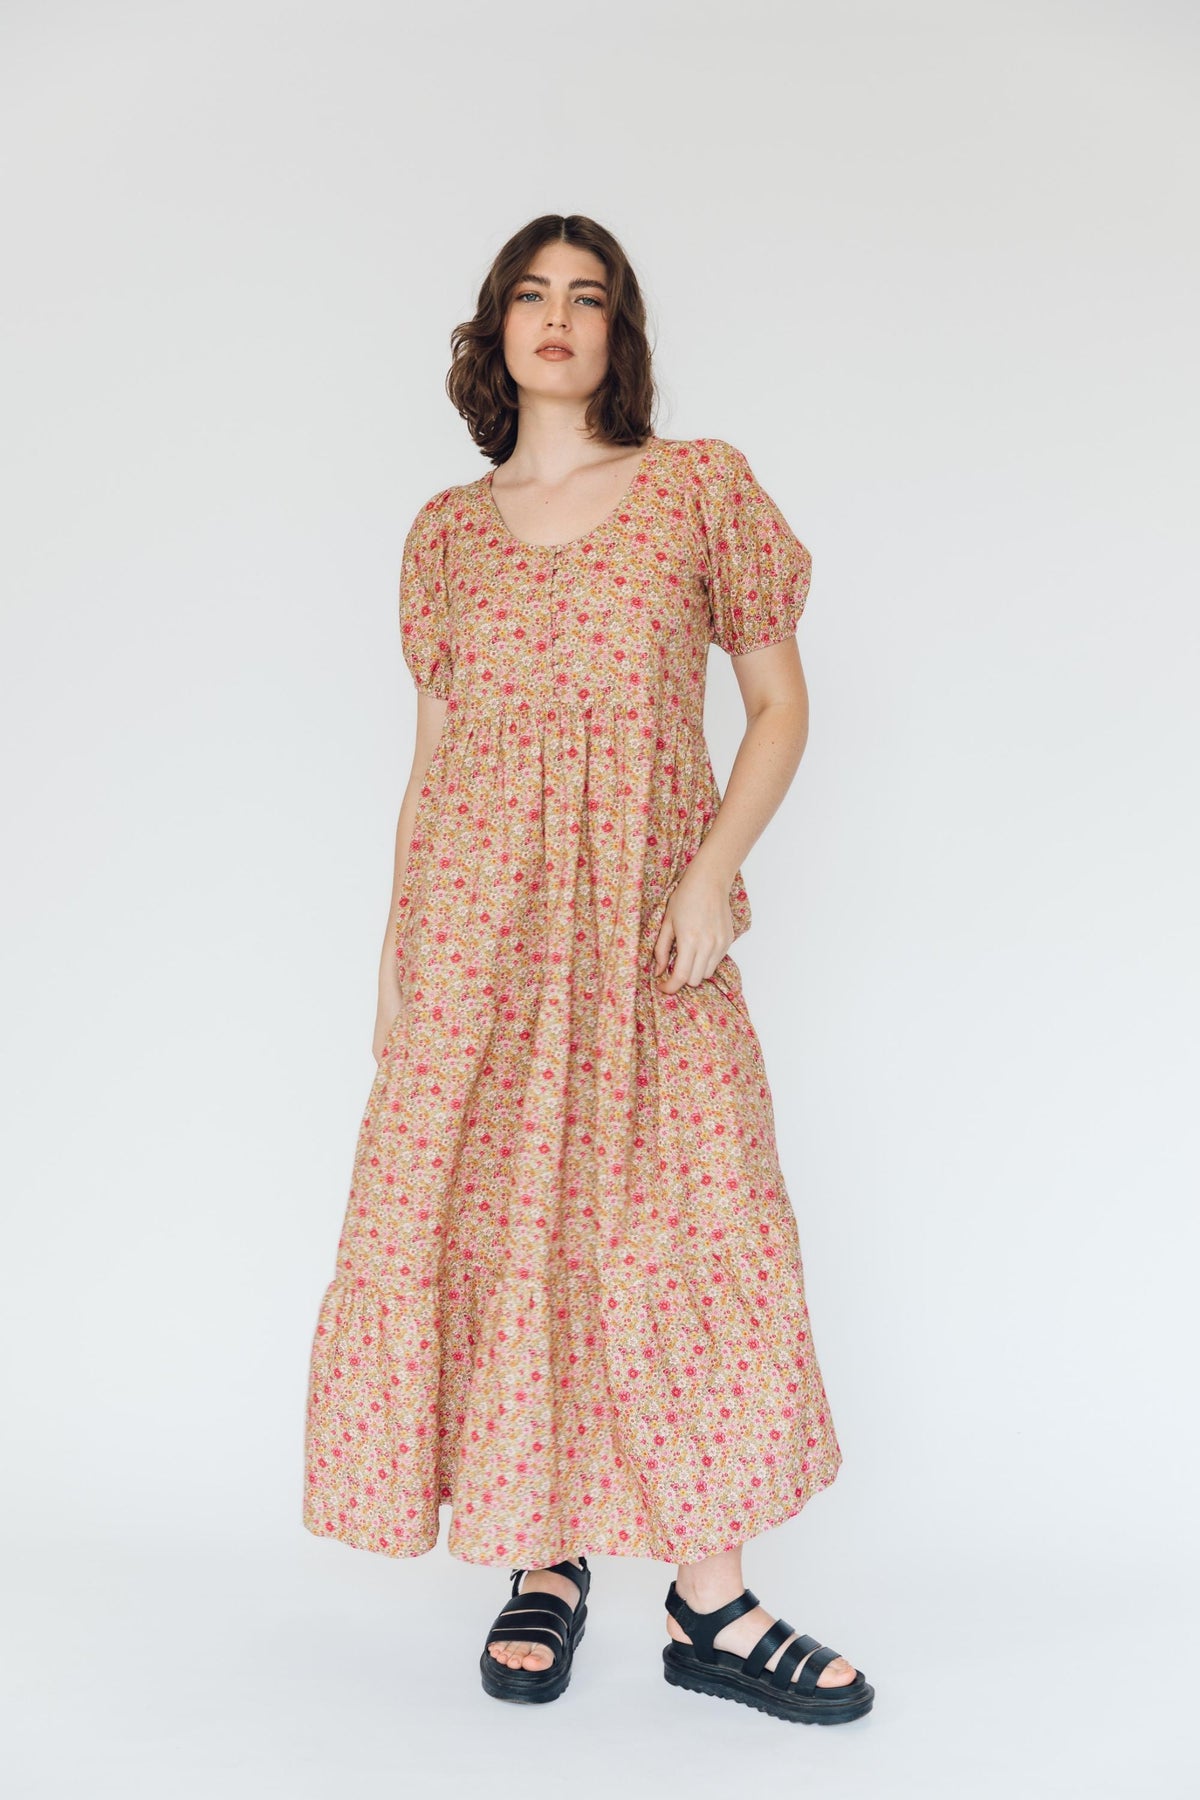 Lottie Dress in Summer Rose